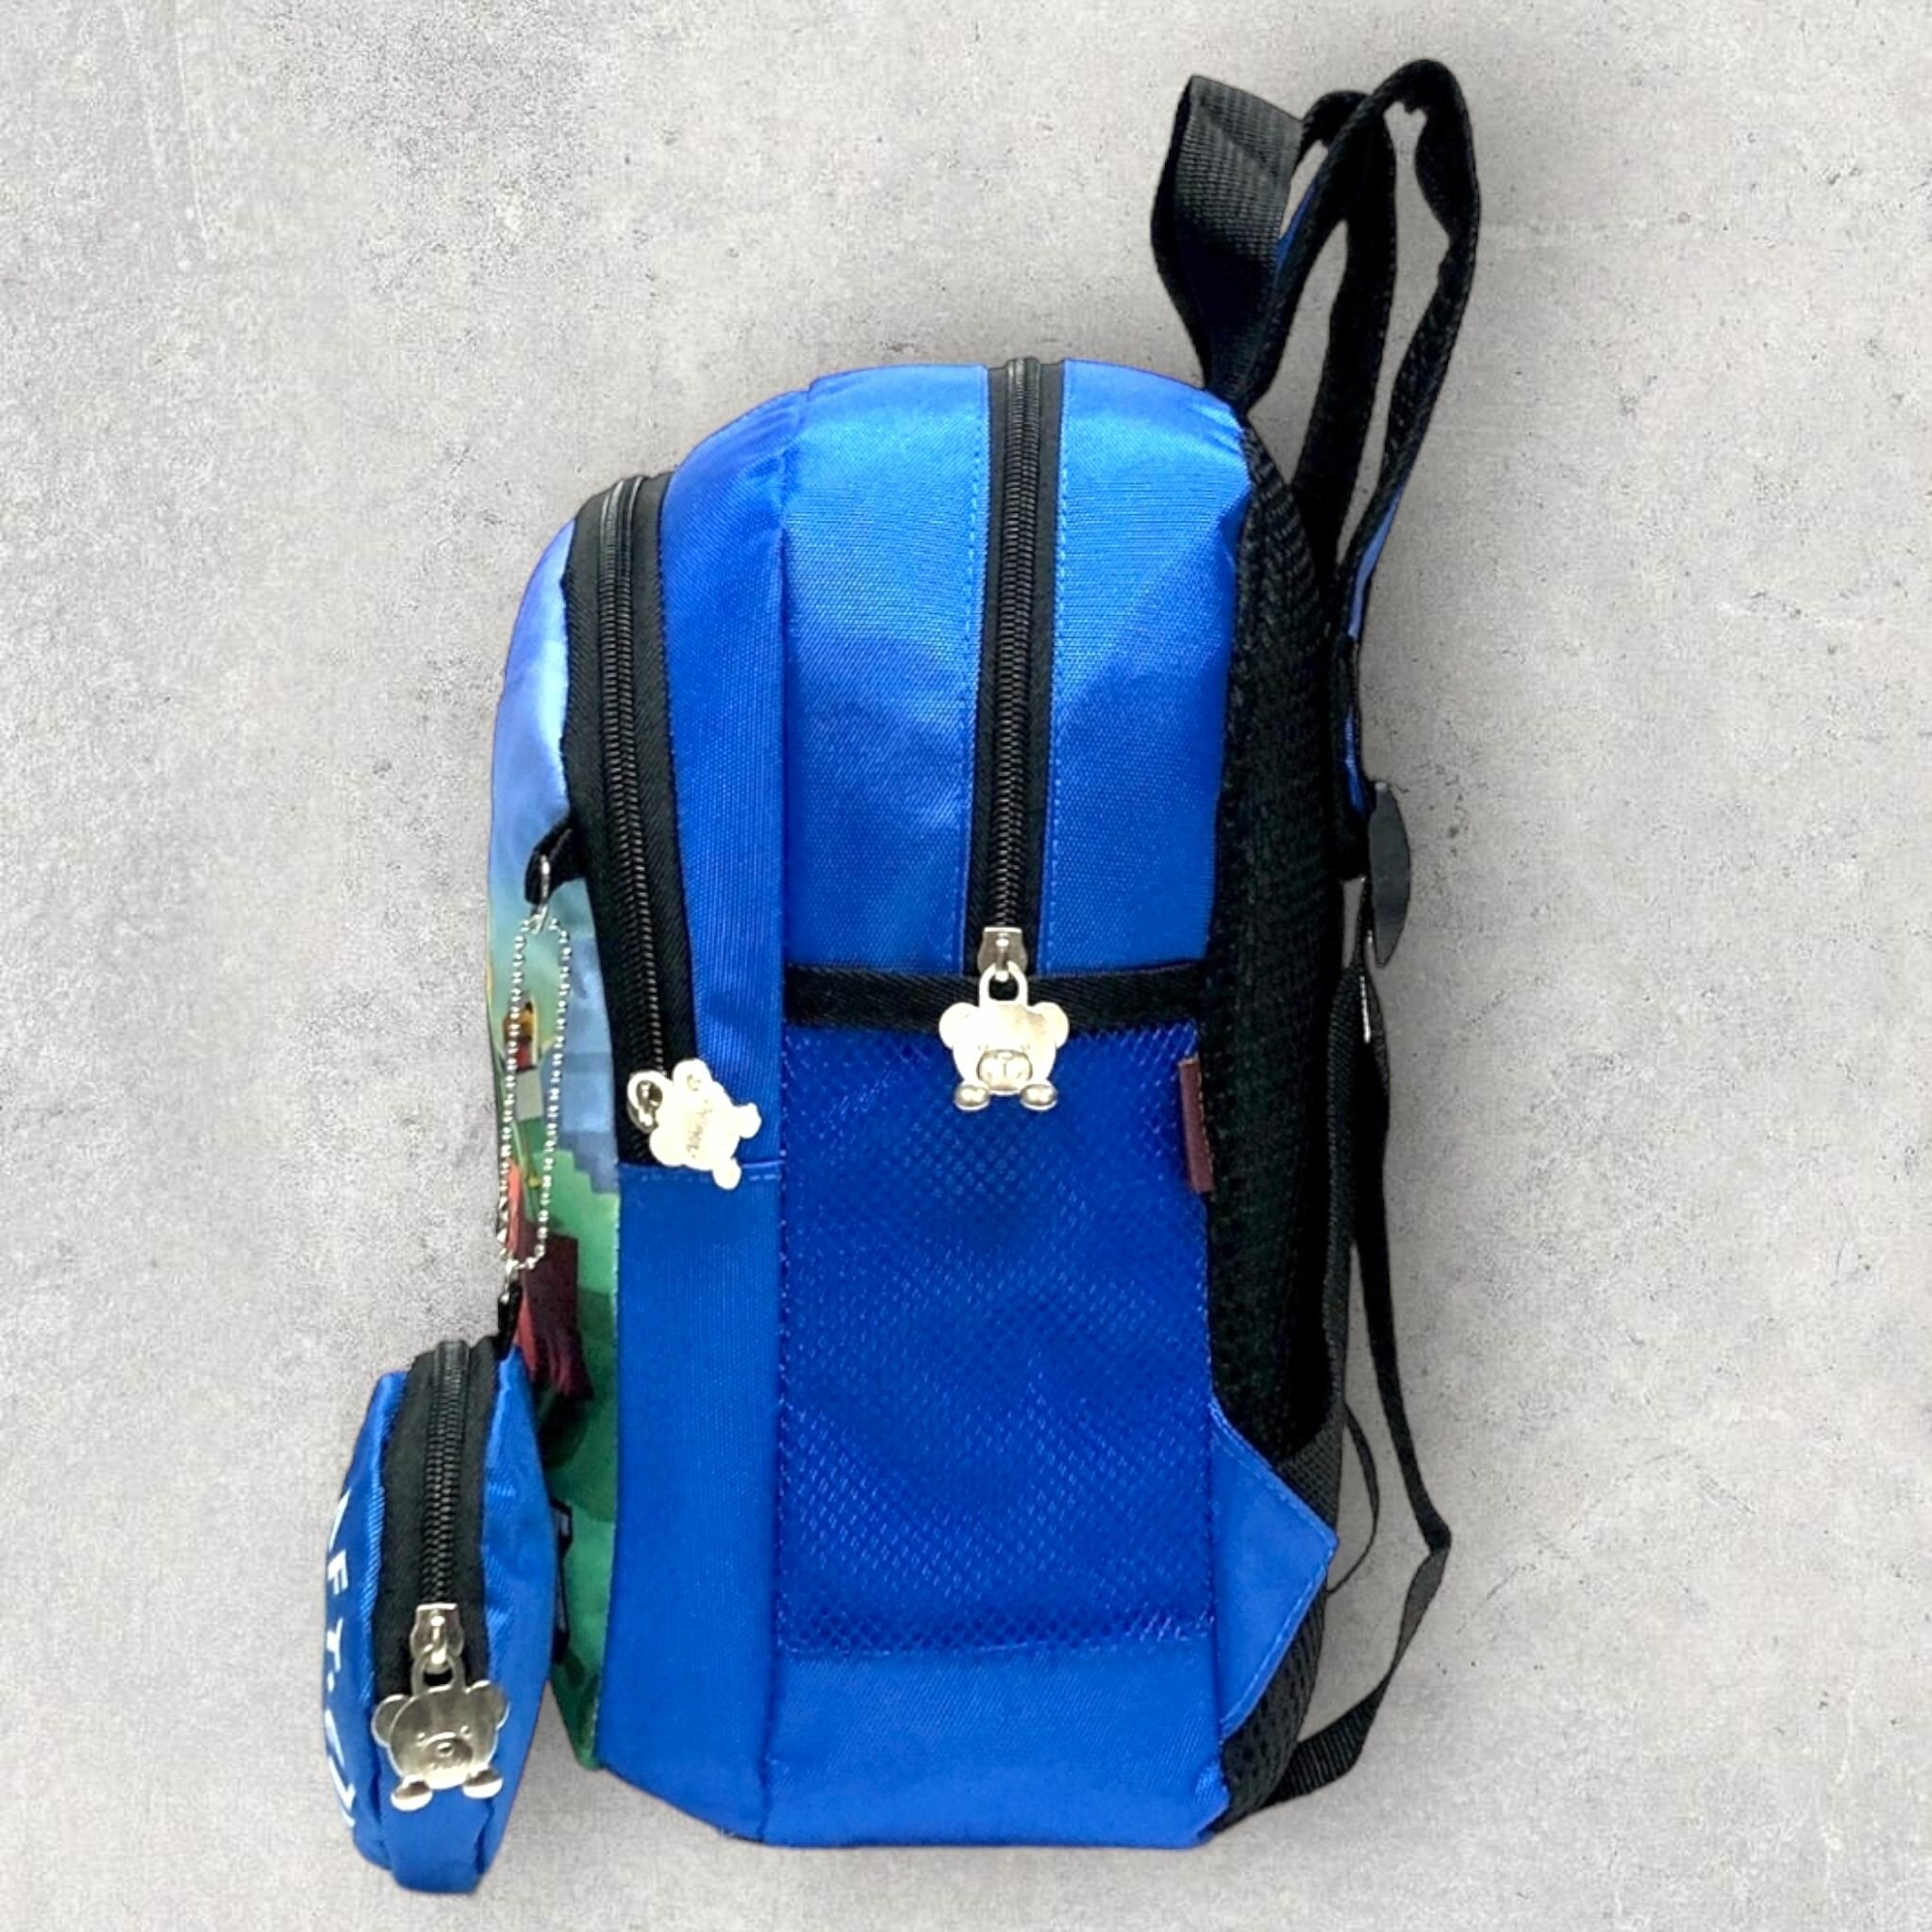 Рюкзак дошкольный для мальчика Minecraft с кошелком, Майнкрафт рюкзак детский с современным принтом для прогулок, сада, спортивных секций